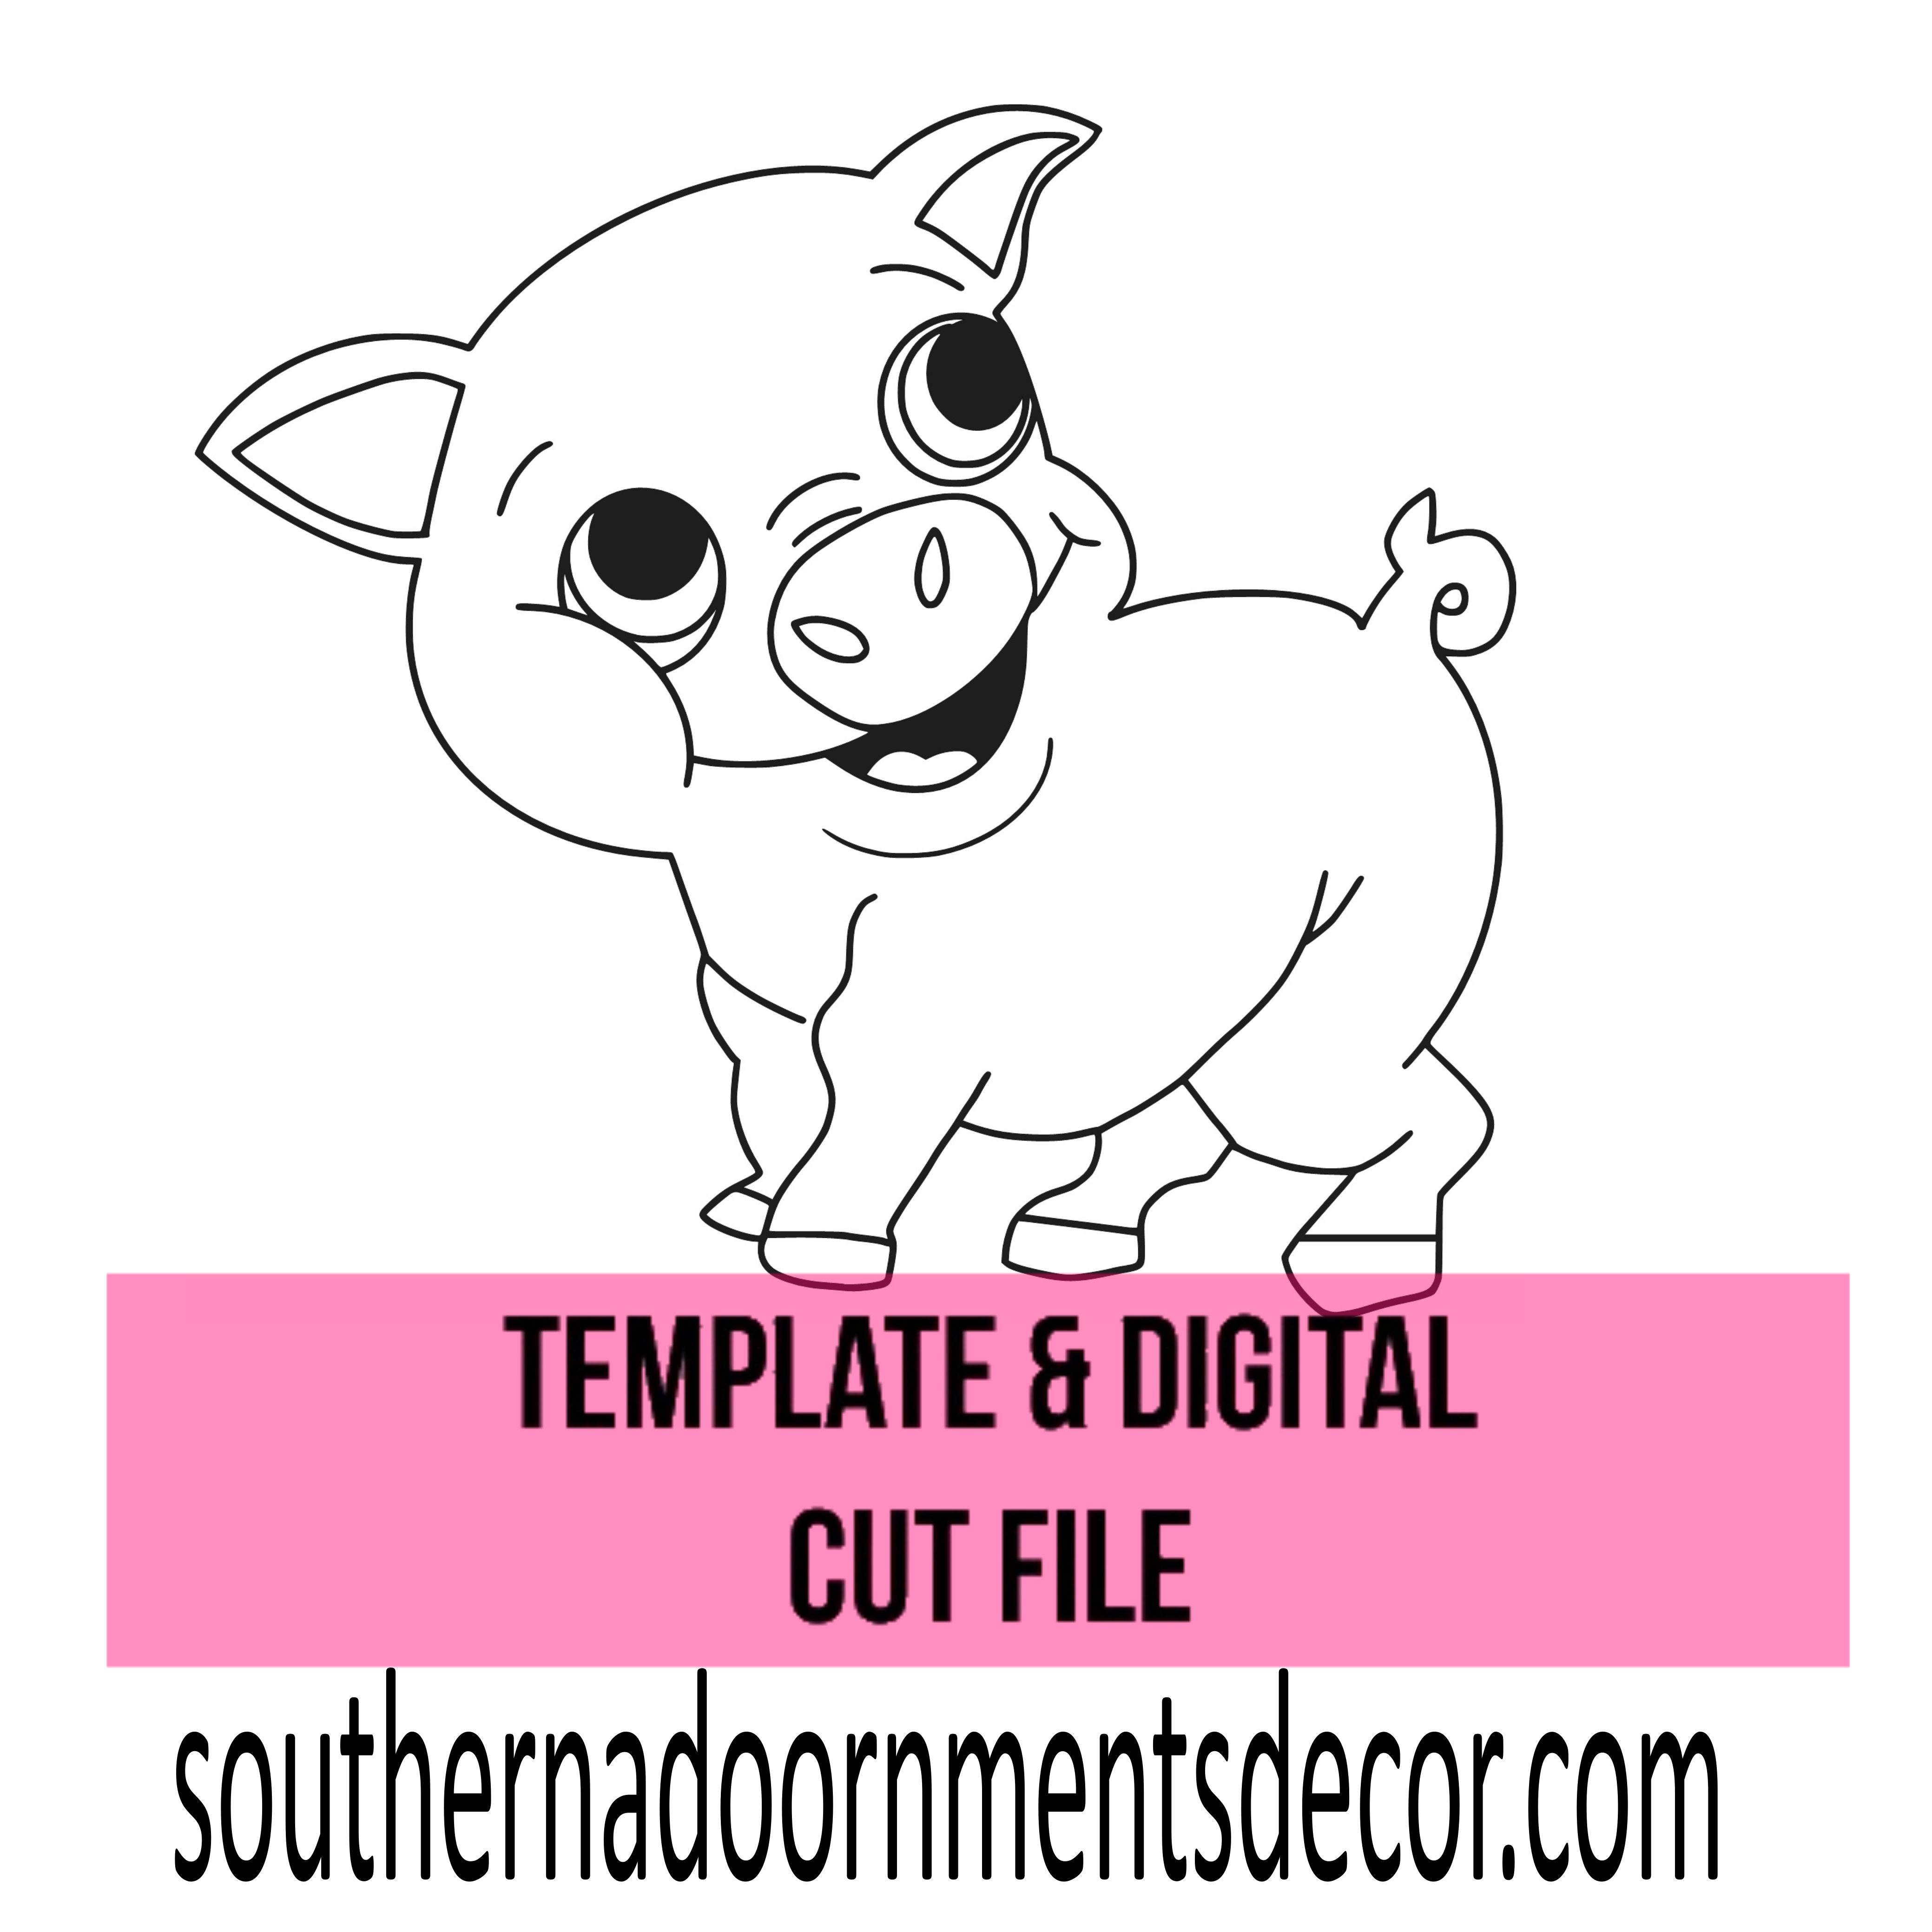 Wilbur The Pig Template & Digital Cut File